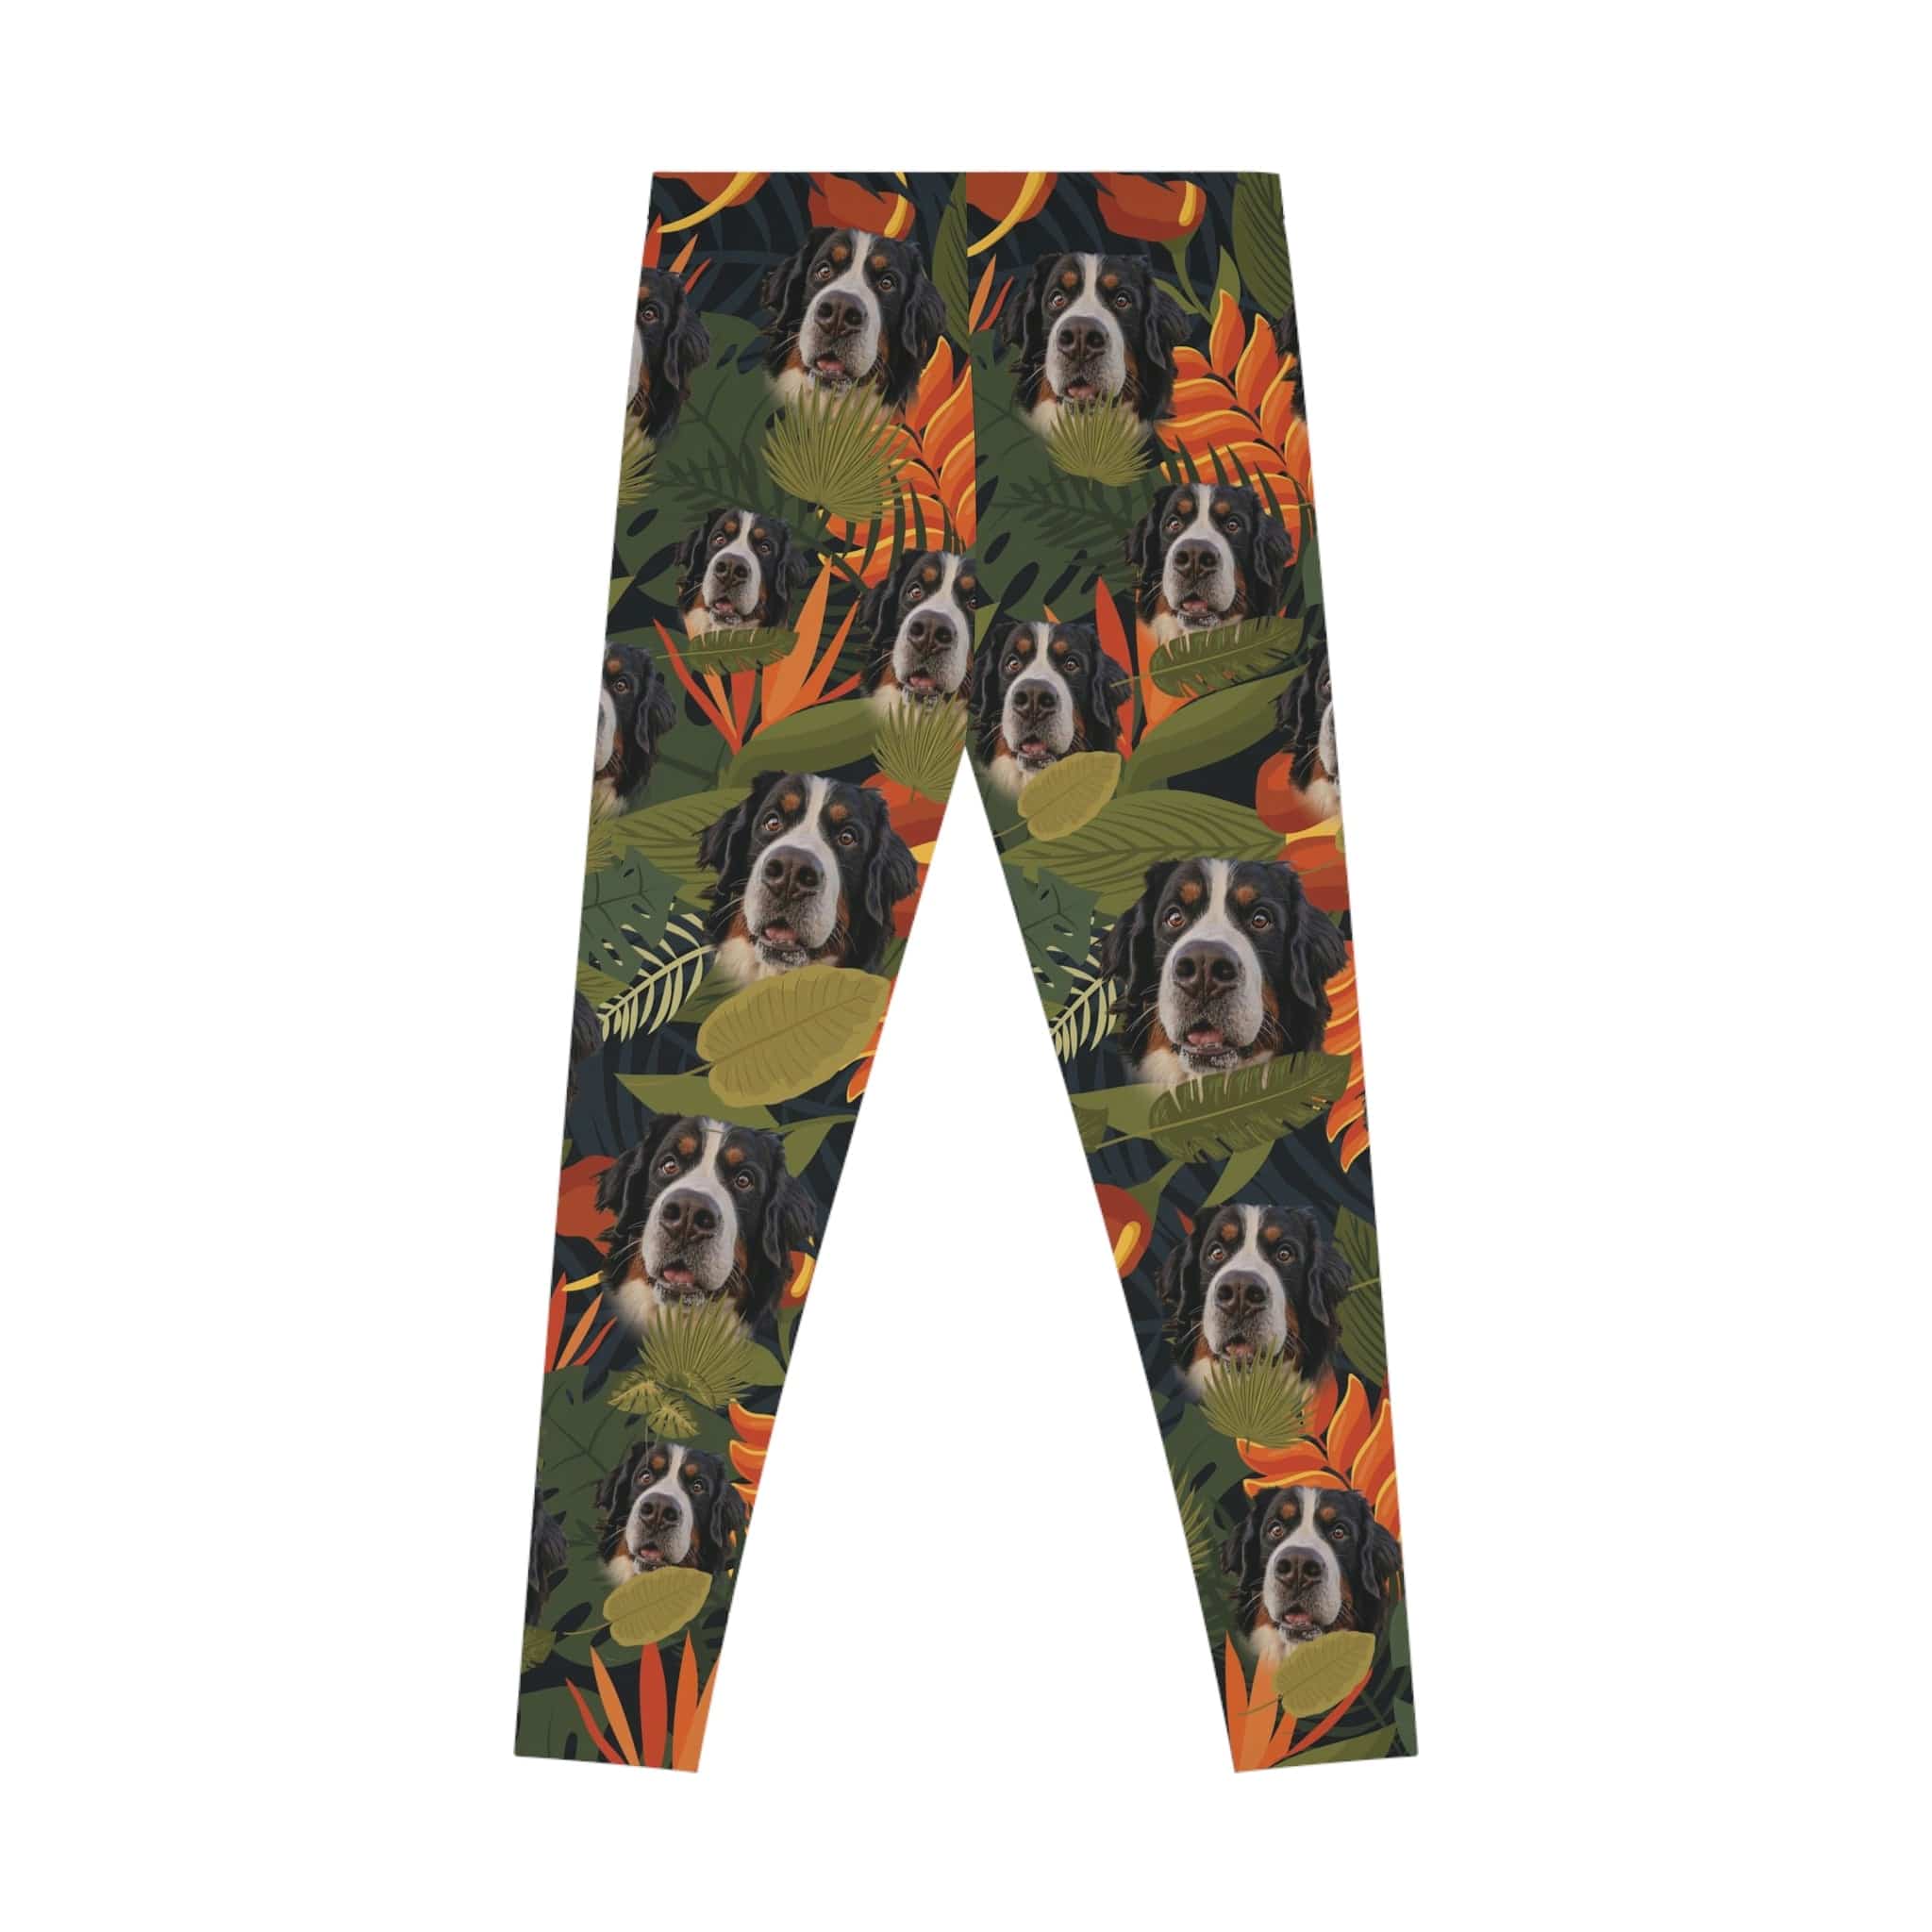 Calzas personalizadas (Musgo exuberante: 1-4 mascotas)